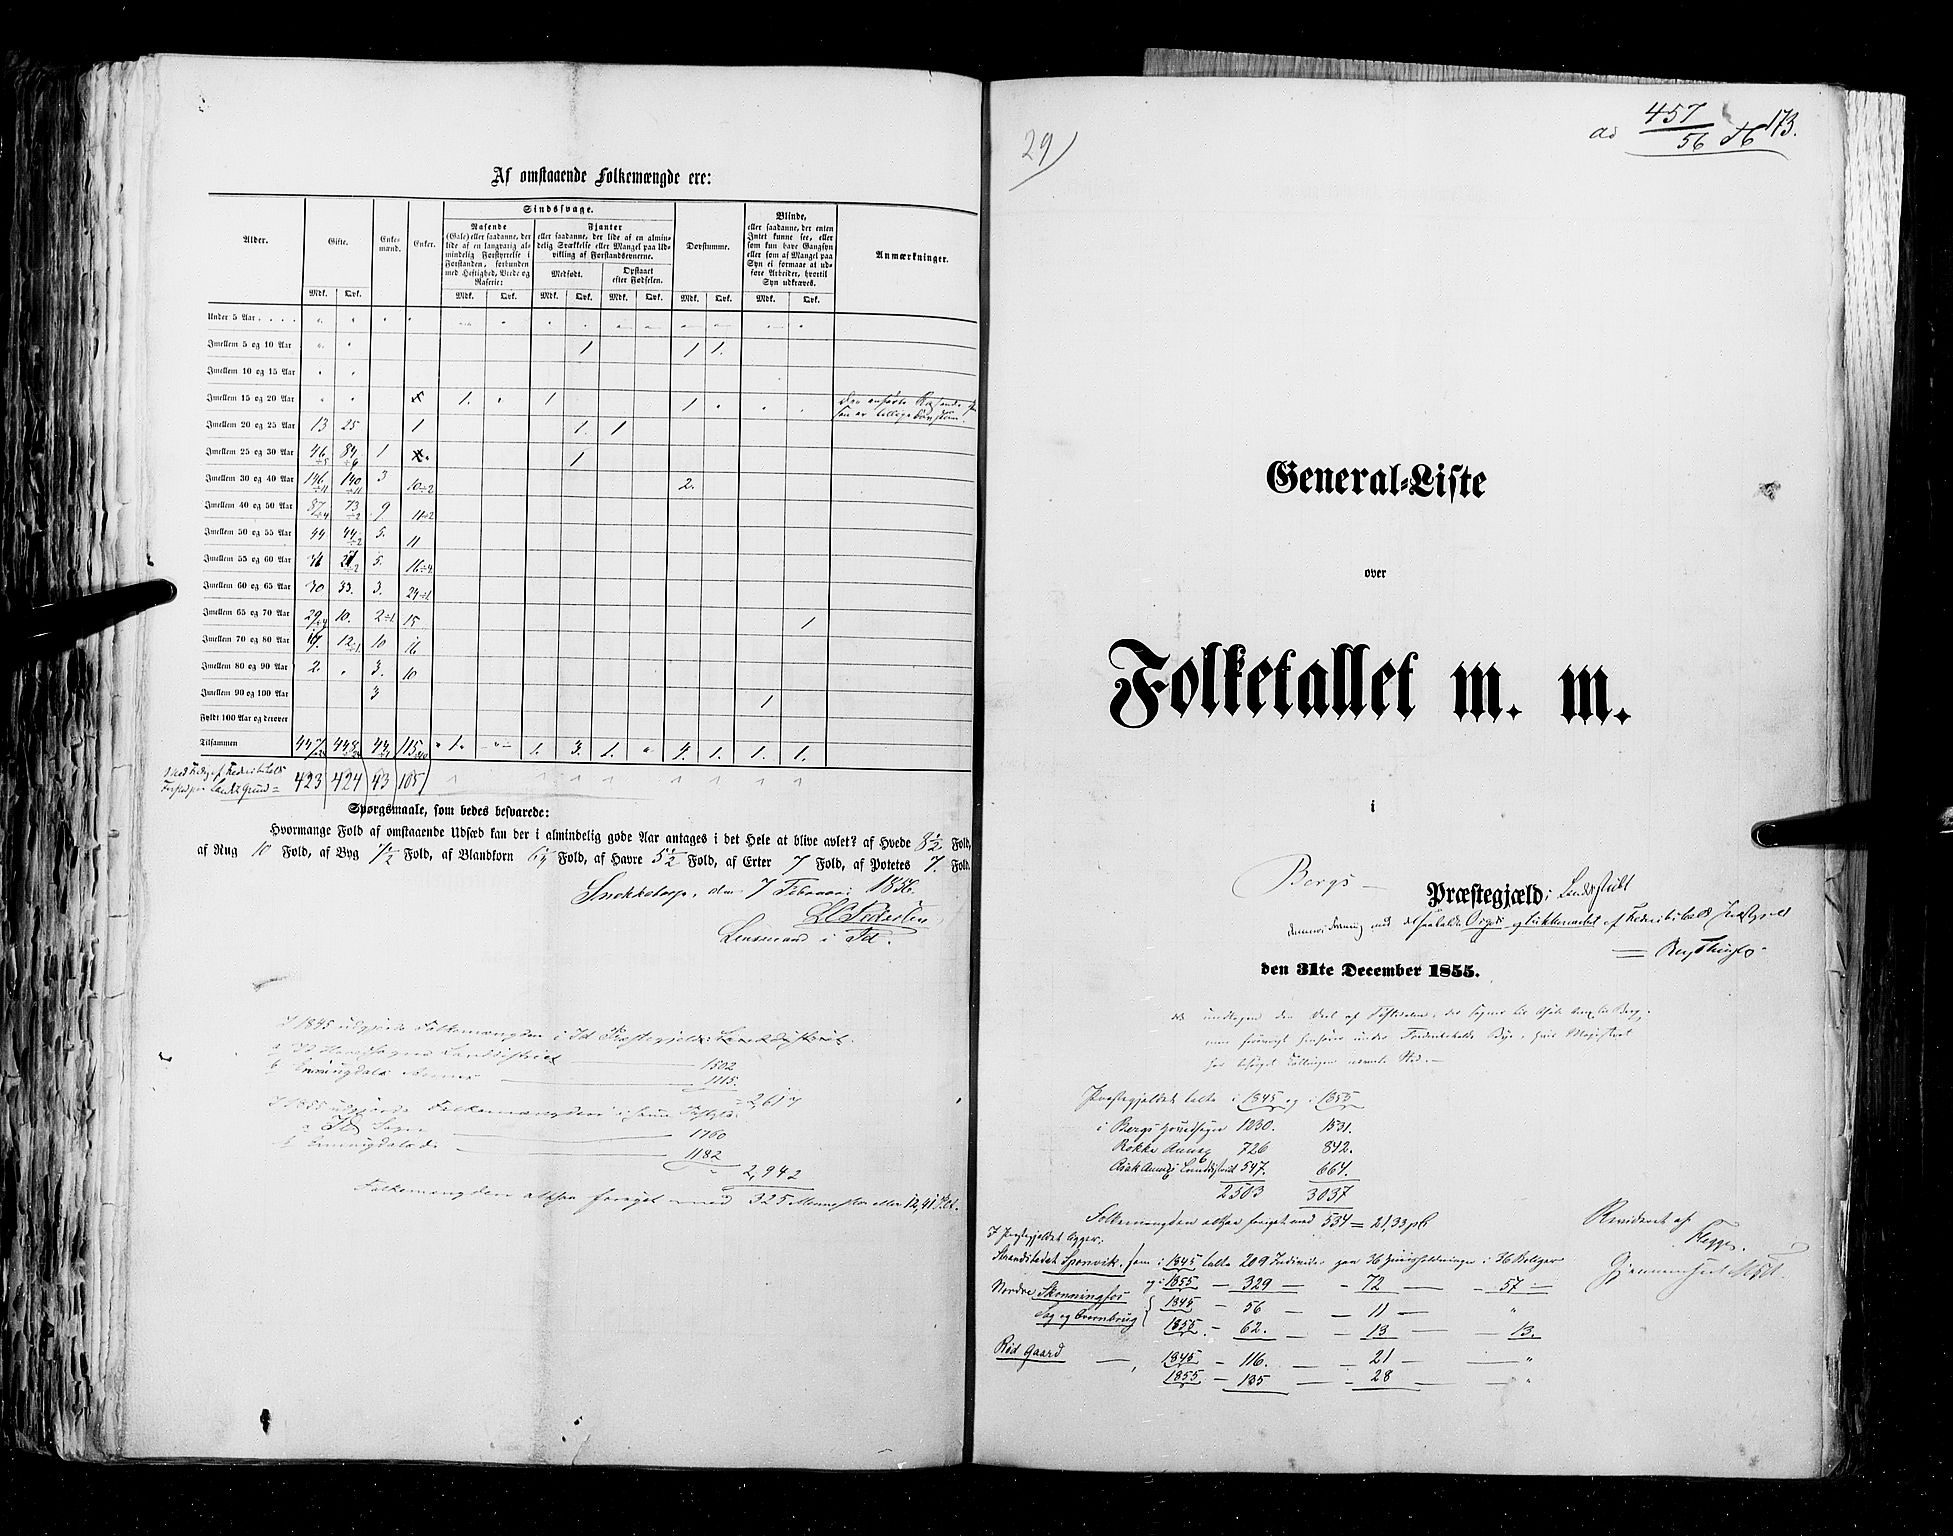 RA, Folketellingen 1855, bind 1: Akershus amt, Smålenenes amt og Hedemarken amt, 1855, s. 173